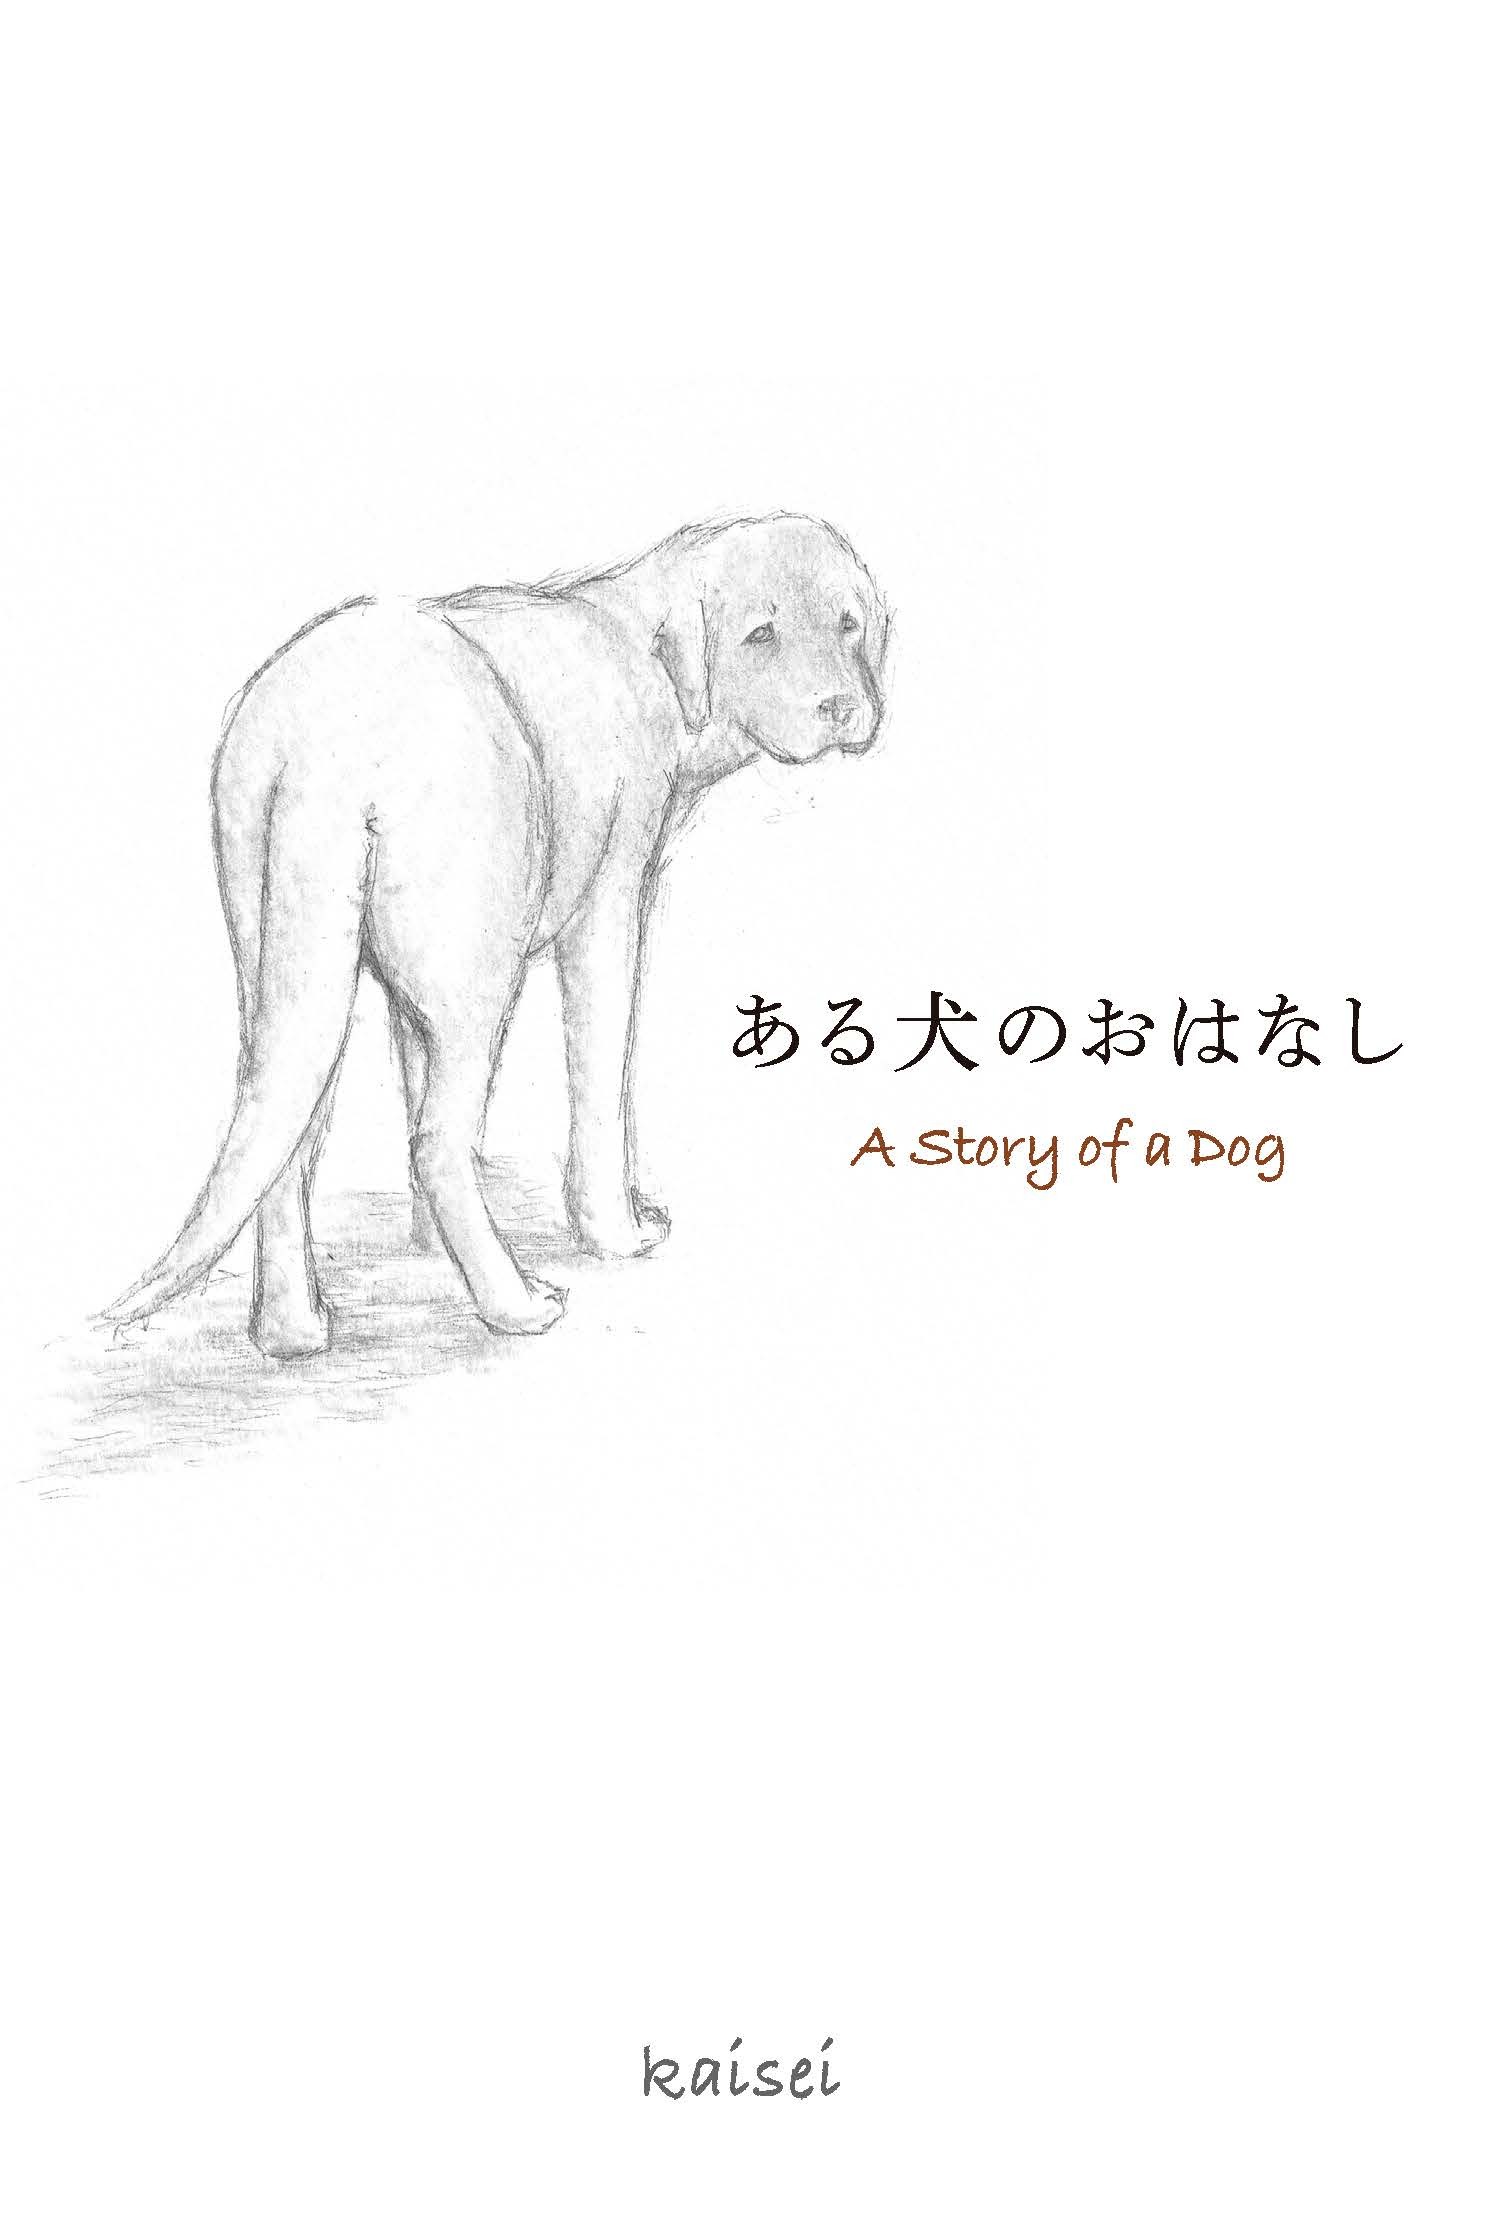 新刊 殺処分ゼロ を願って書かれた手書き絵本 ある犬のおはなし を11月24日書籍化 株式会社トゥーヴァージンズのプレスリリース